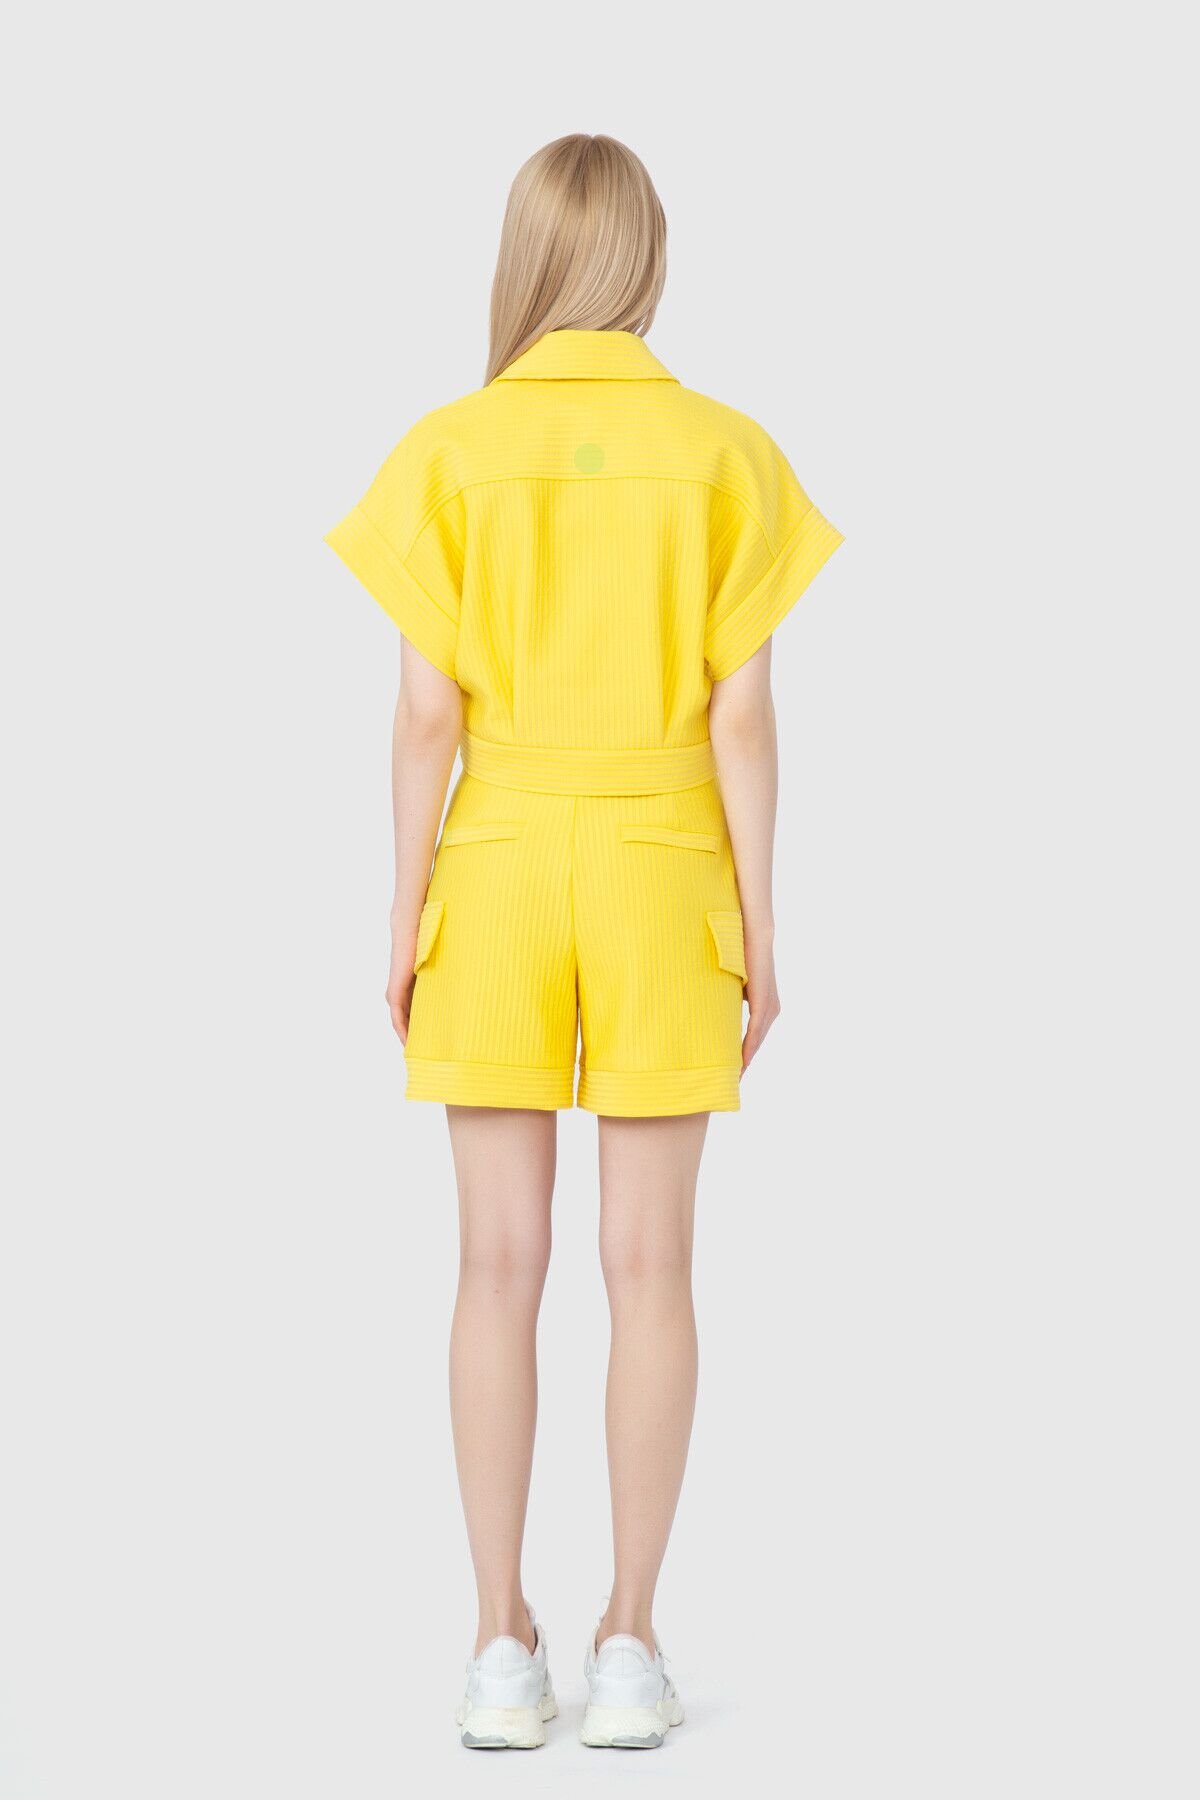 Nakış Logo Detaylı Çıtçıt Kapama Kısa Kol Sarı Ceket